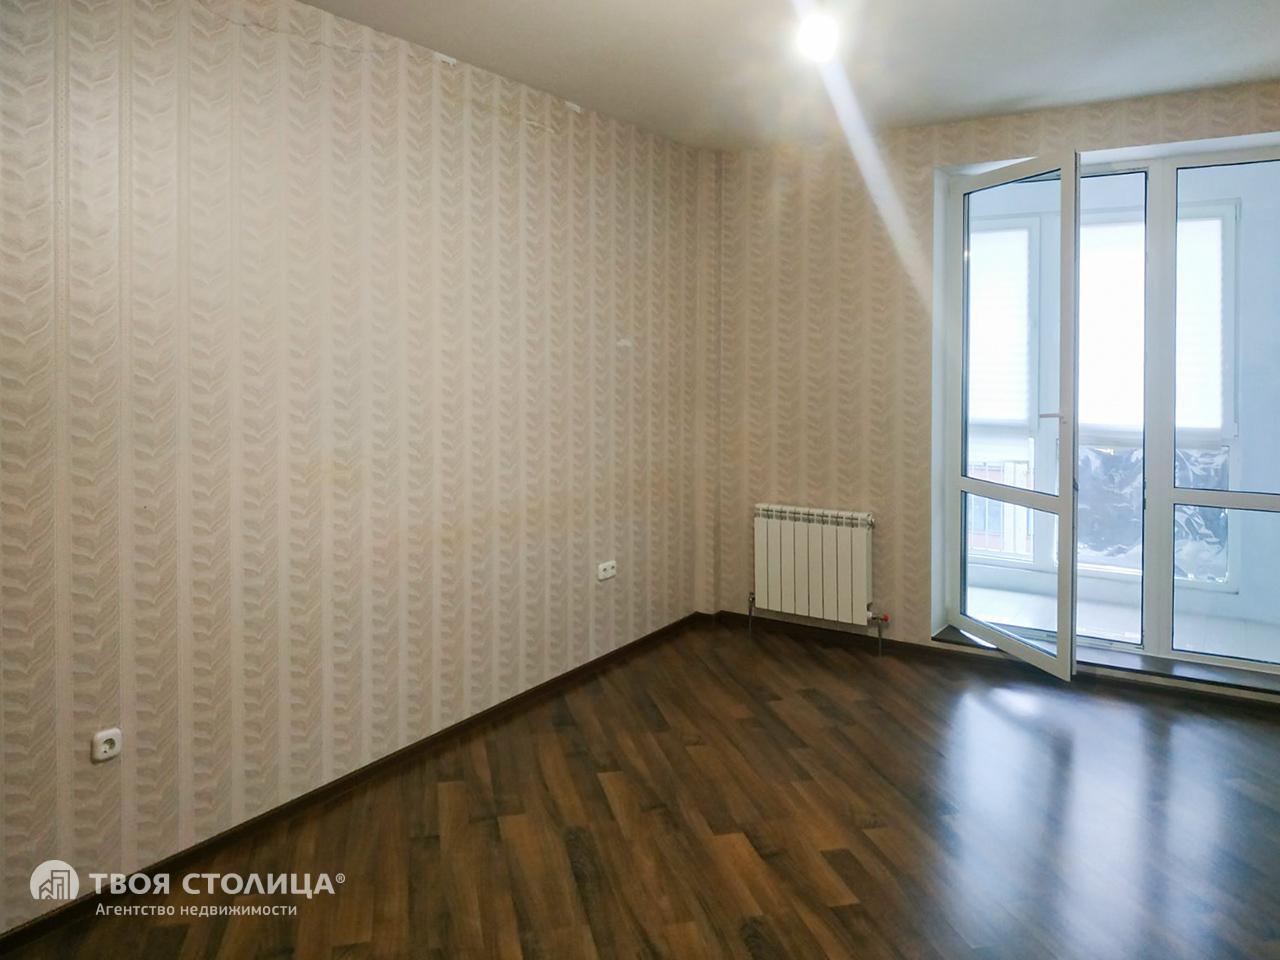 Средняя стоимость м2 продажи квартир в Минске